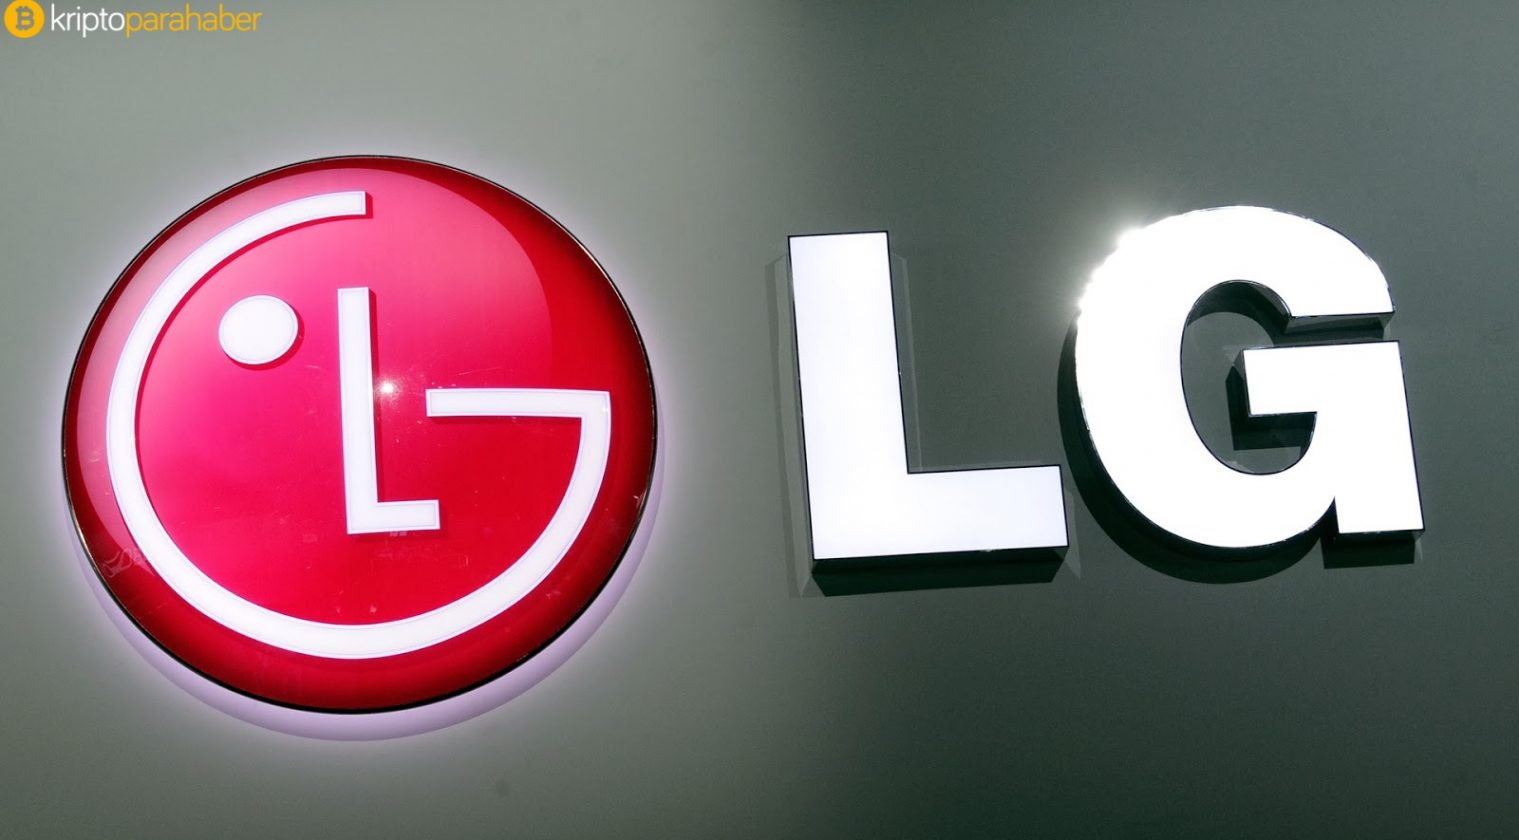 Elektronik devi LG, dijital banka işini geliştirmek için anlaşmalar yapıyor